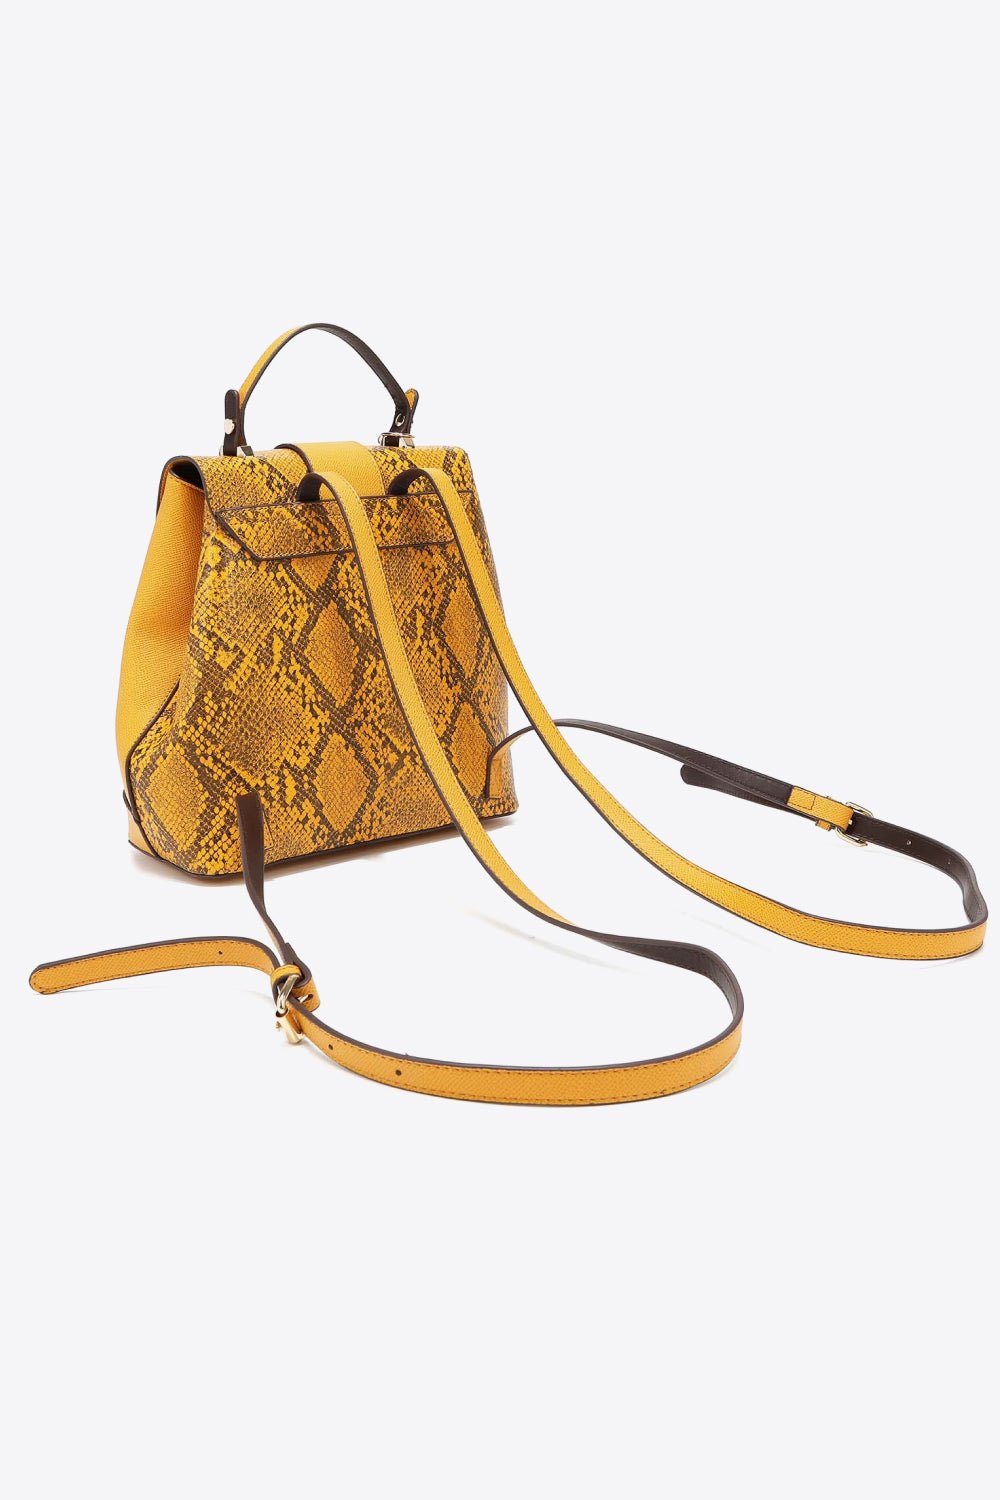 Python Print Vegan Leather 3-Piece Hand Bag SetHandbag SetNicole Lee USA